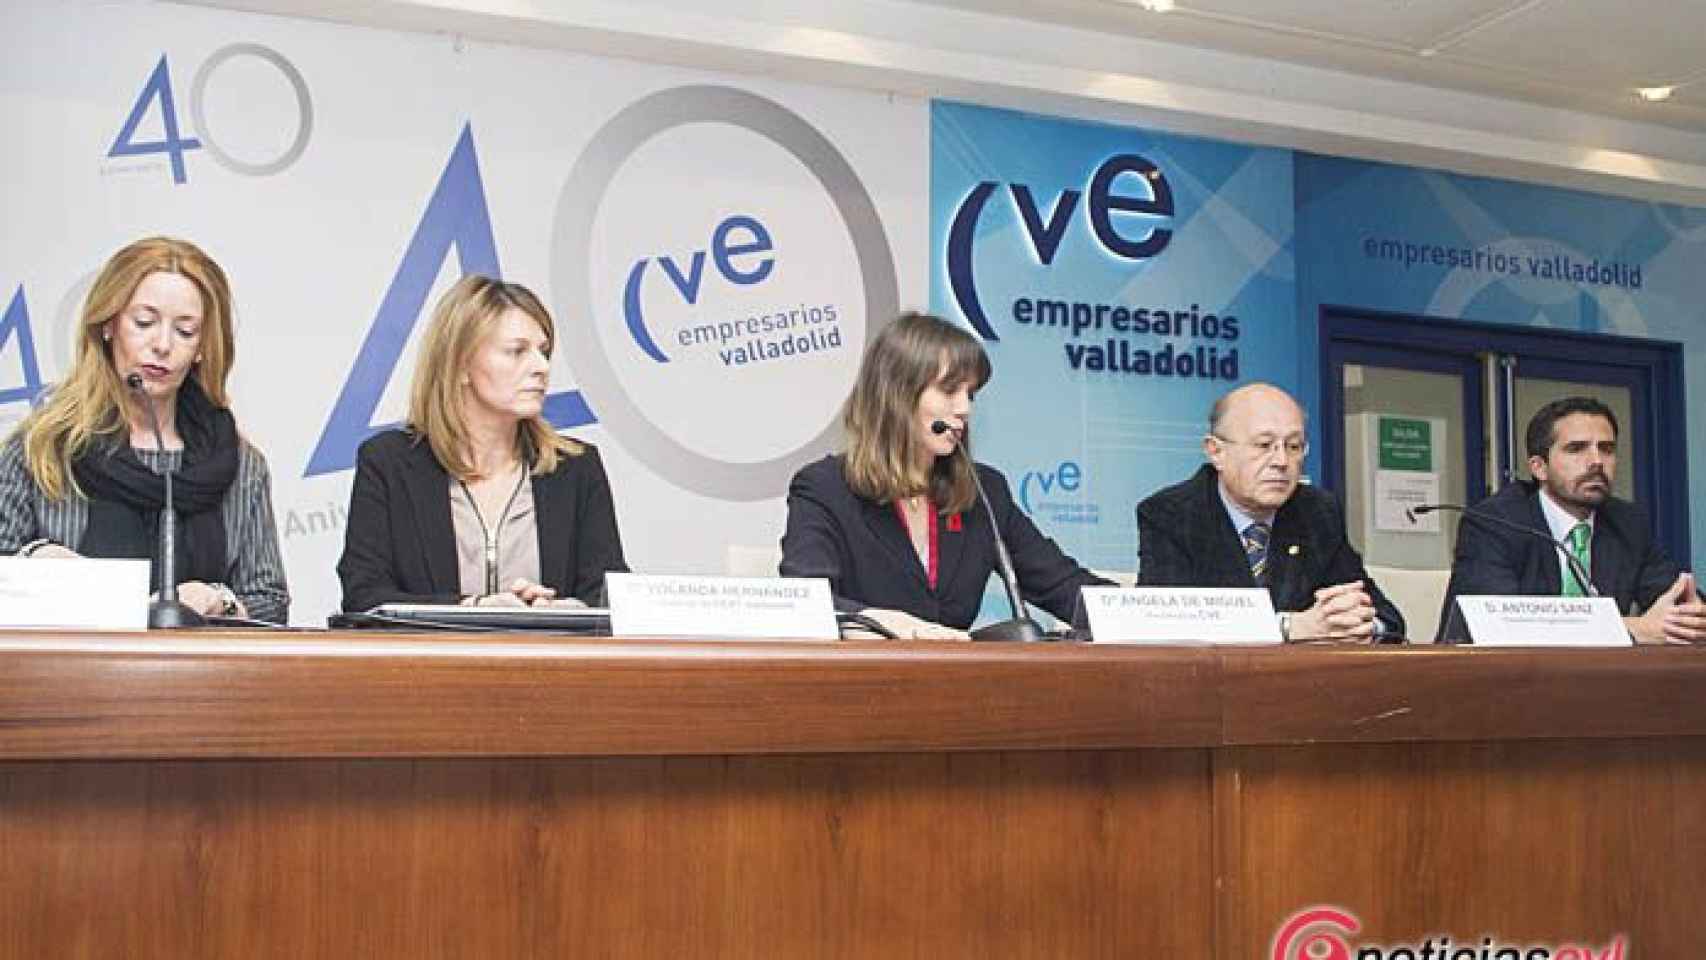 Valladolid-CVE-gala-40-aniversario